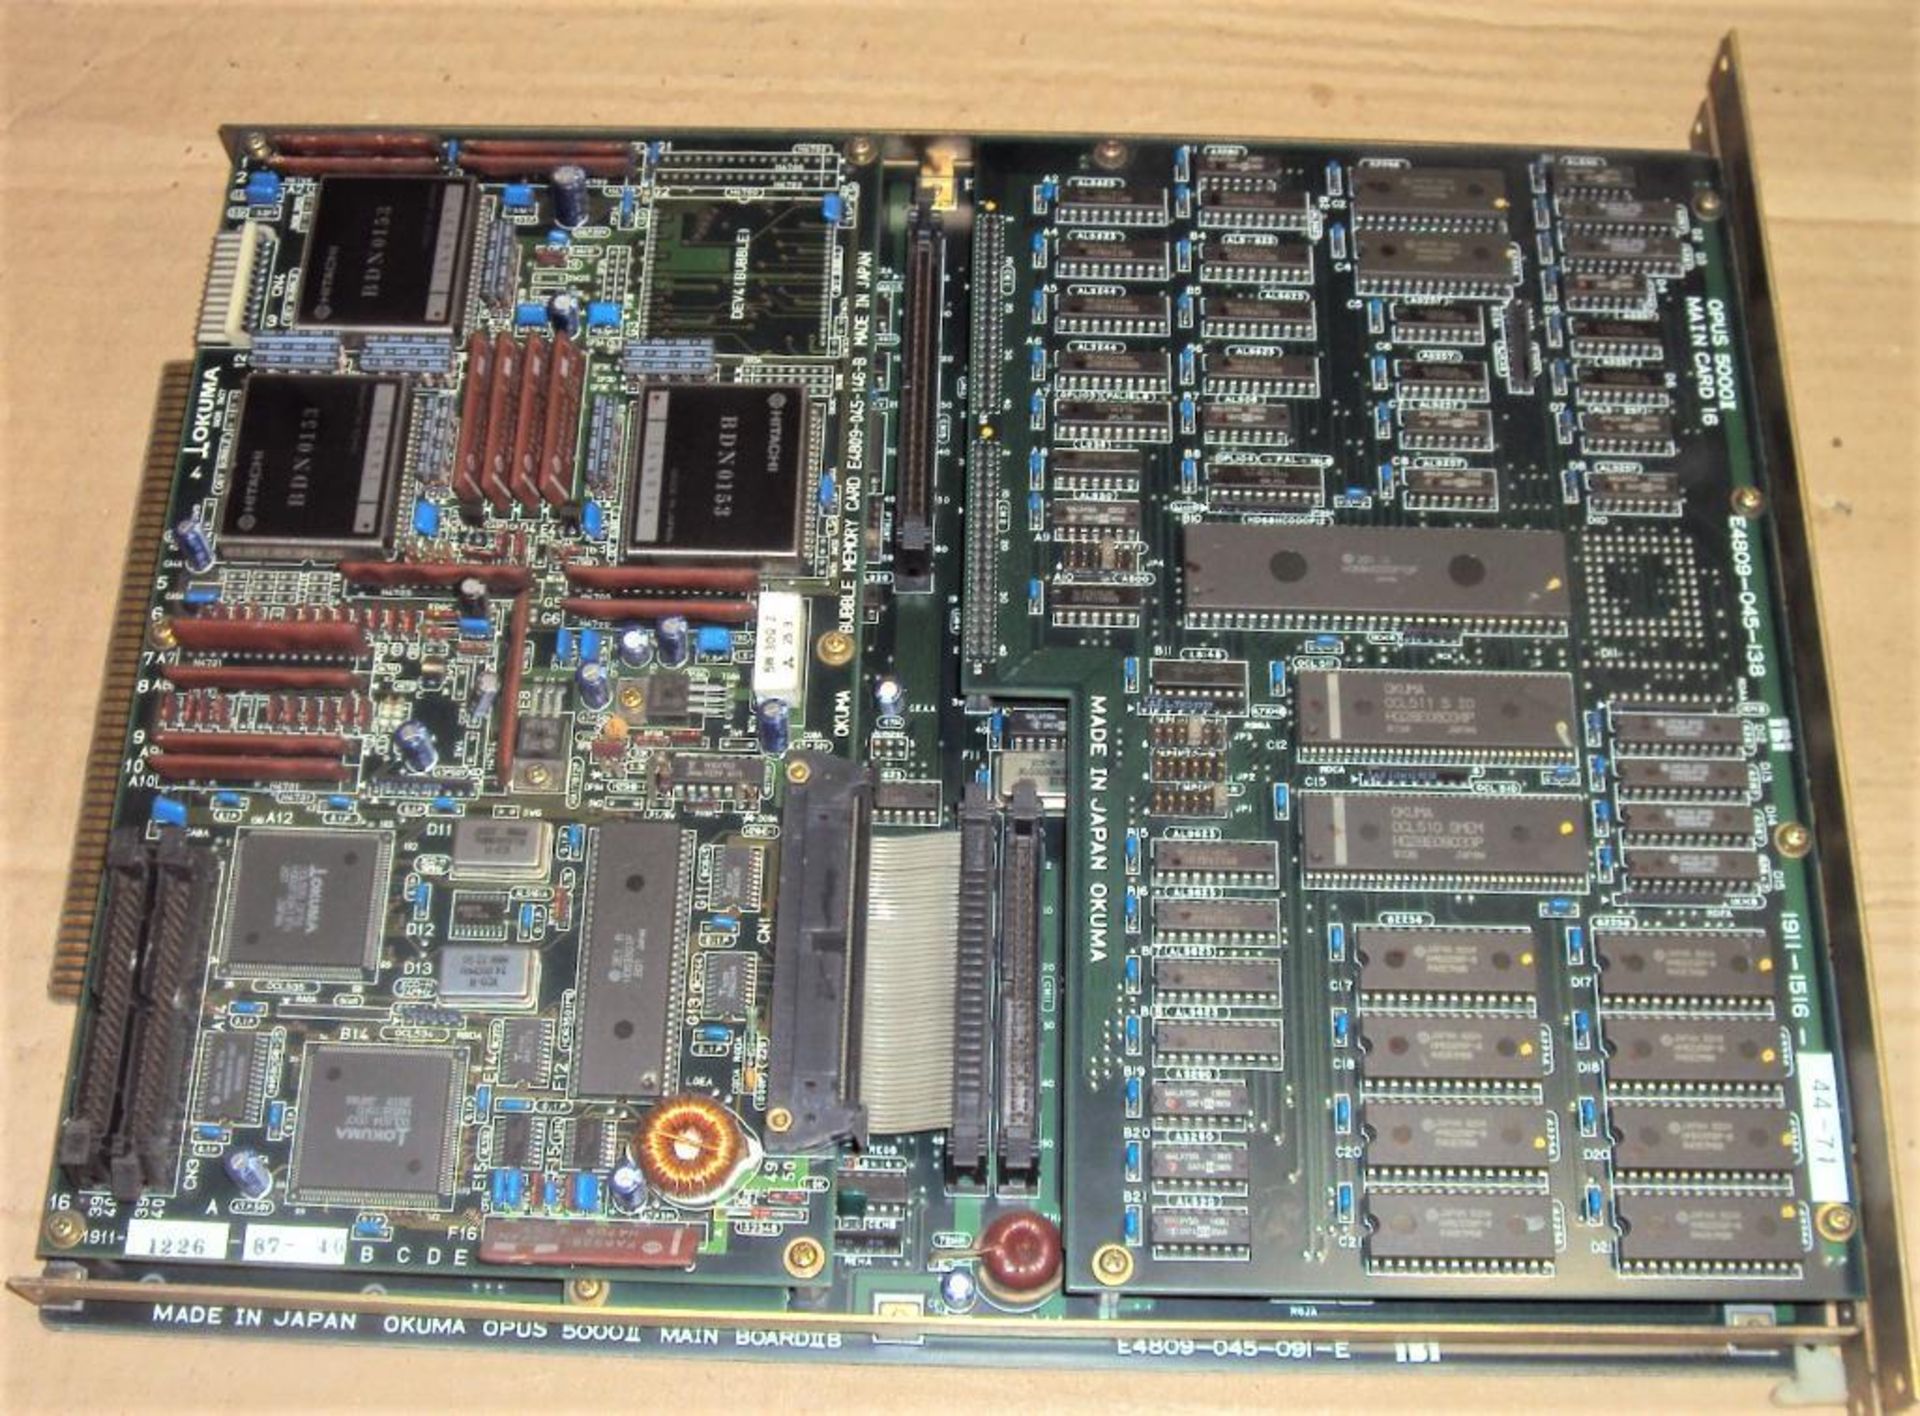 Okuma Opus 5000II E4809-045-091-E Main Board IIE w/ E4809-045-146-B Bubble Memory Card & E4809-045-1